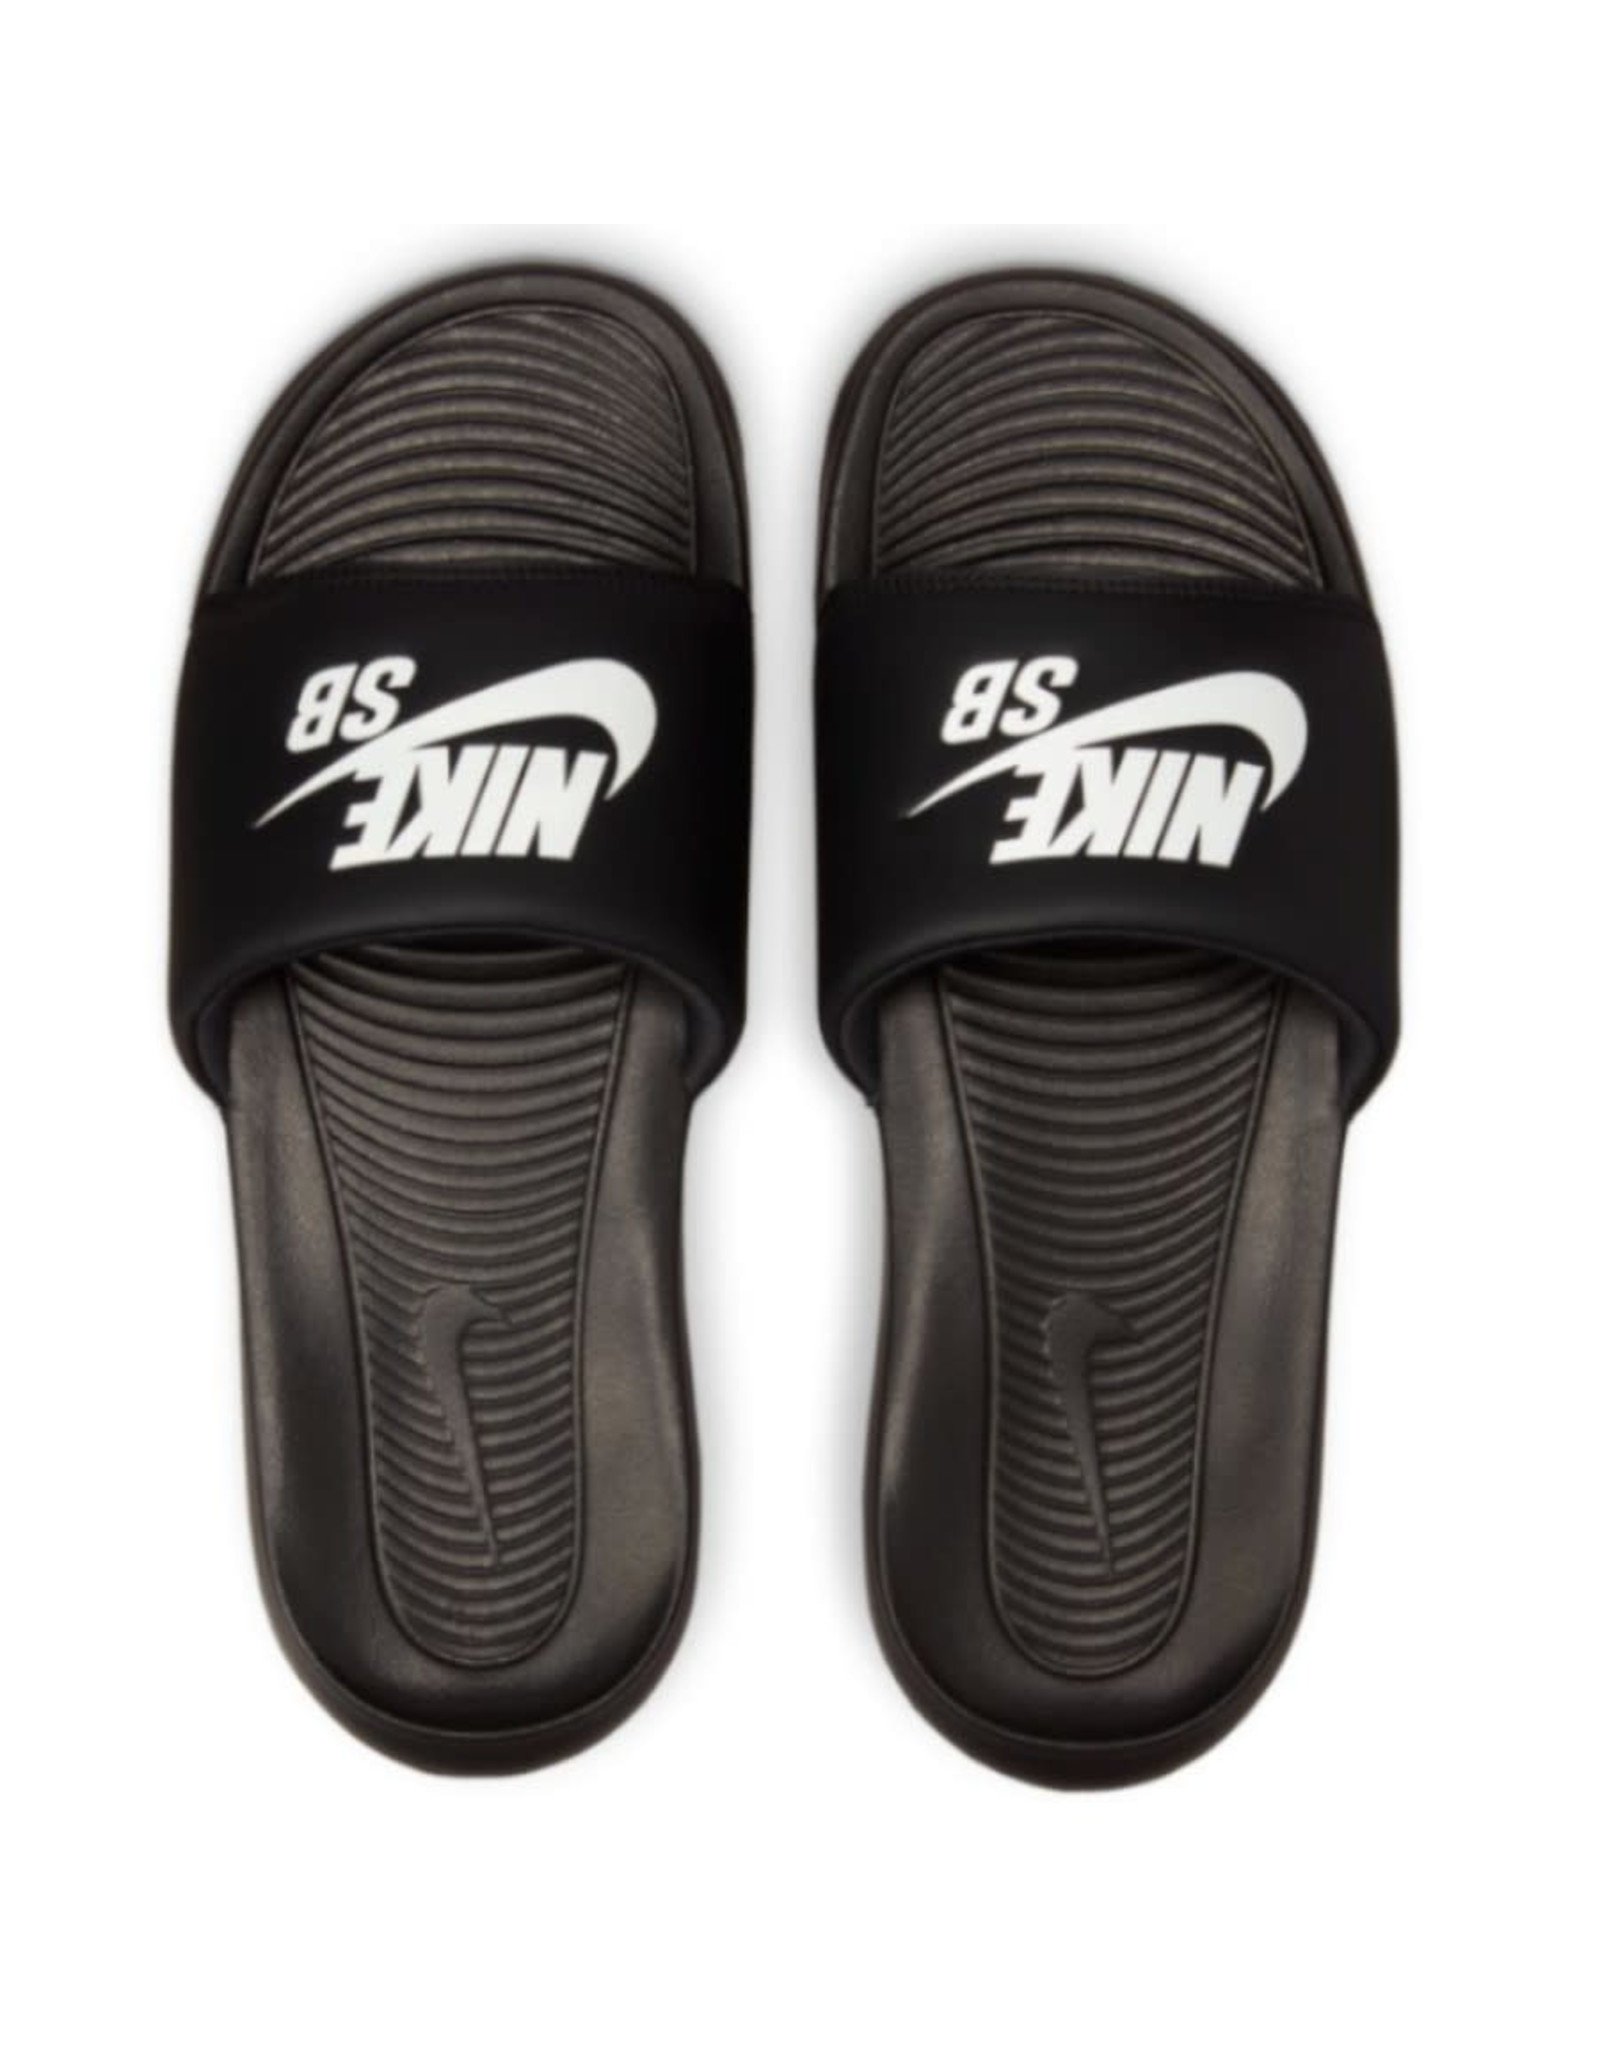 Nike SB Nike SB Sandal Victori One Slides (Black/White)